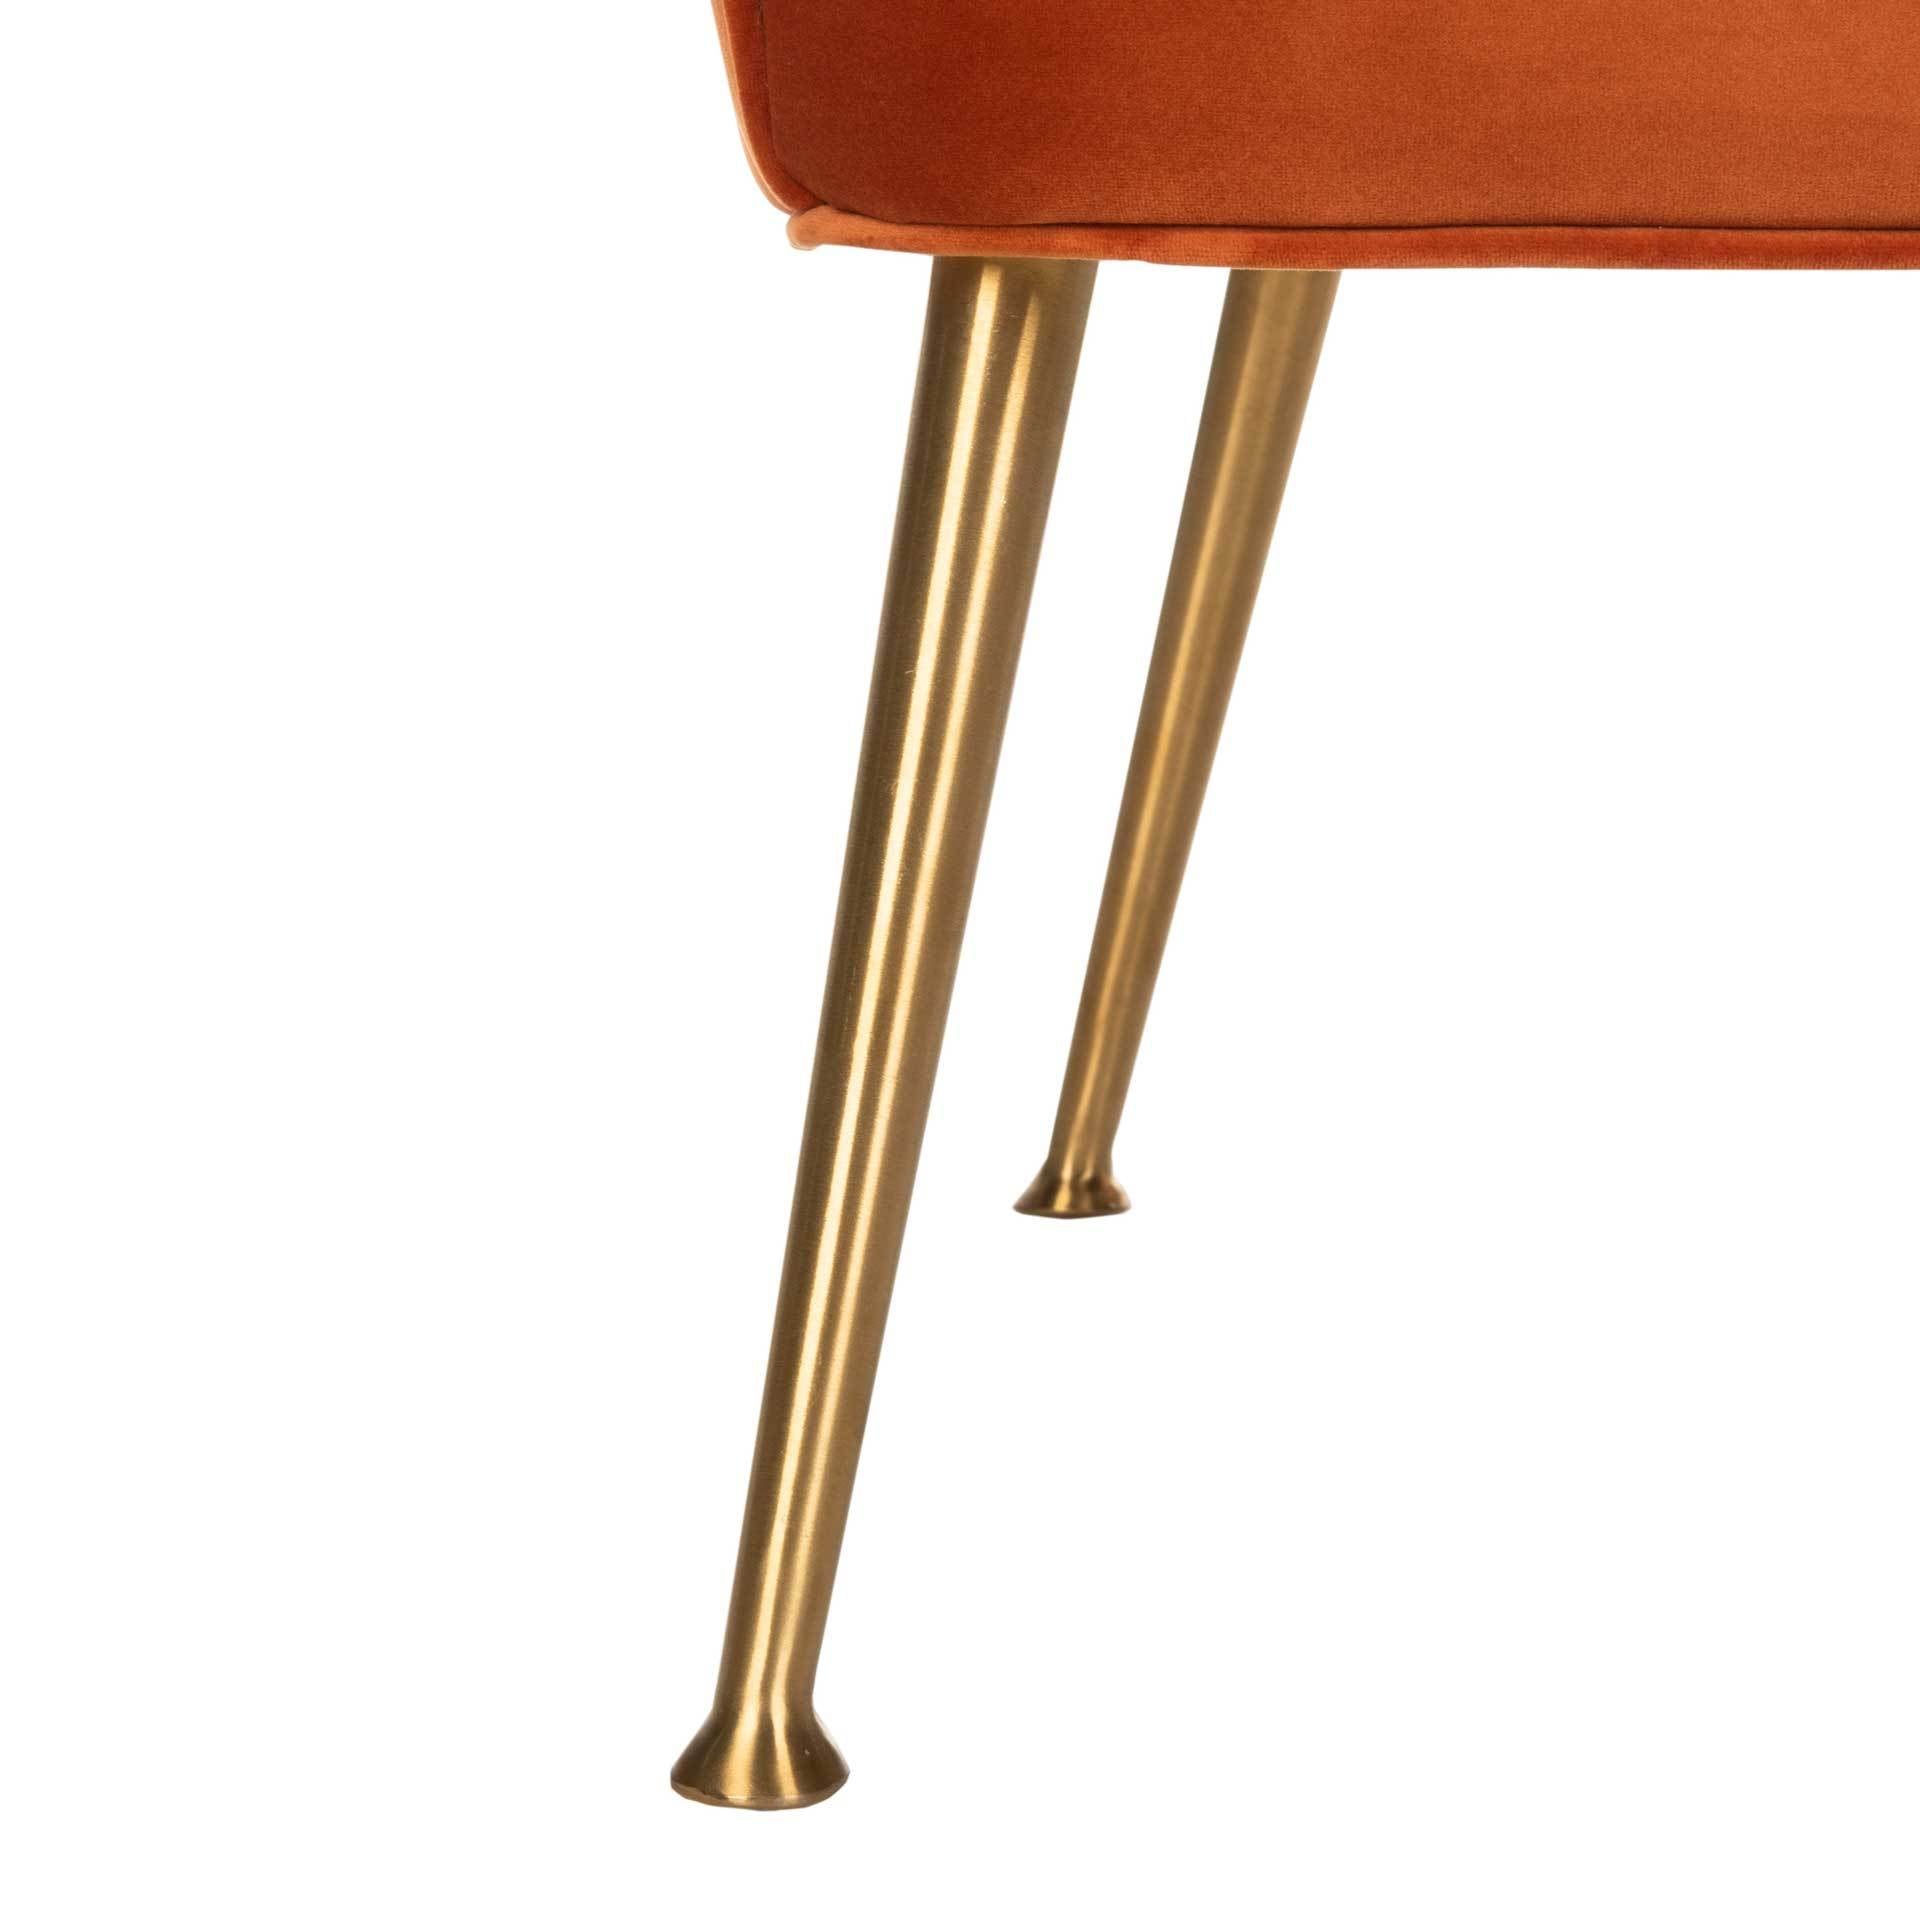 Aidan Velvet Arm Chair Sienna/Gold